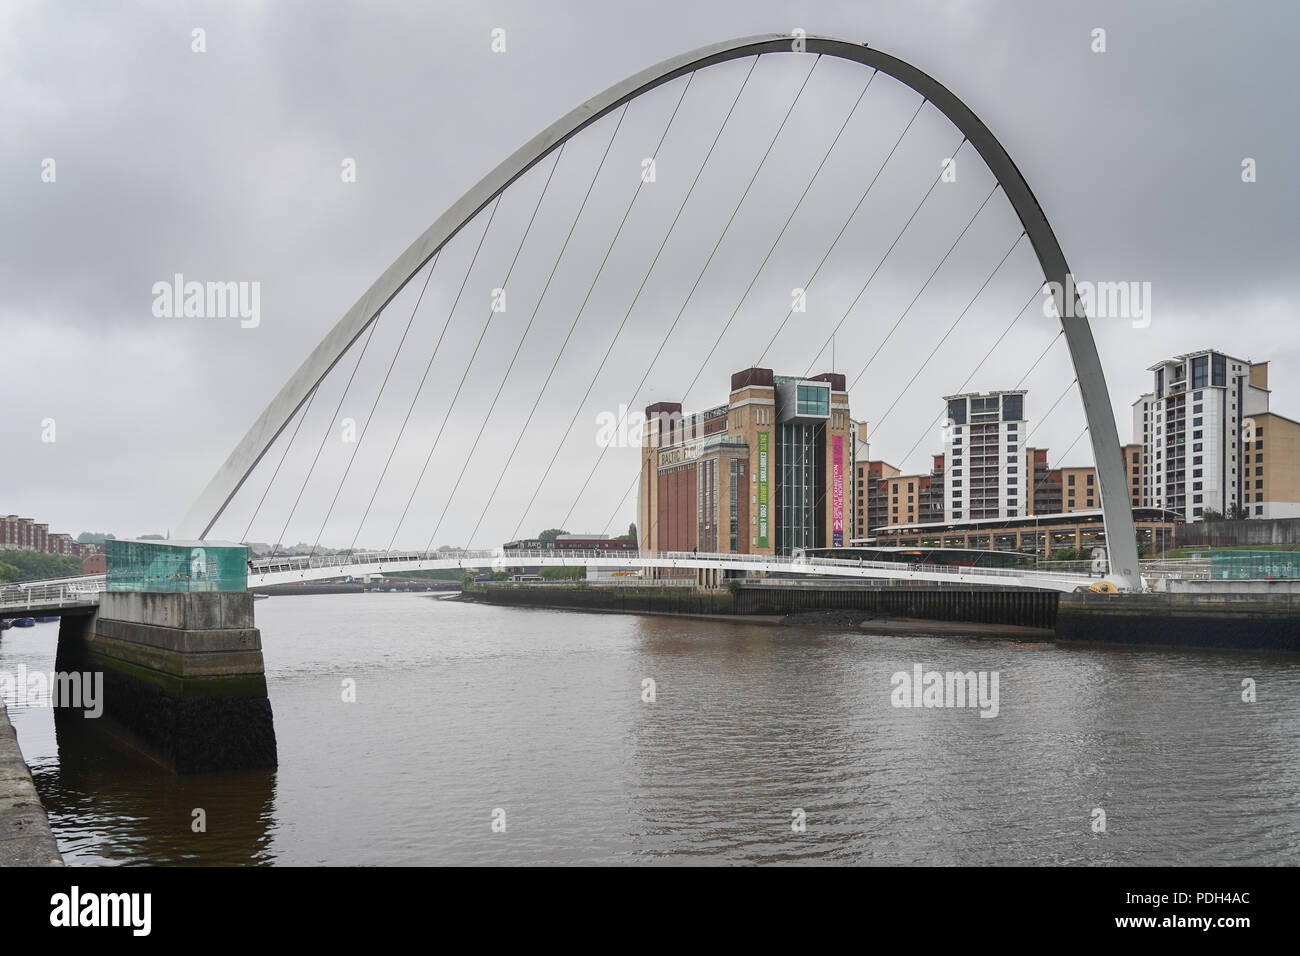 Une vue de la Gateshead Millennium Bridge dans la ville de Newcastle, Royaume-Uni. Date de la photo : le lundi 11 juin 2018. Photo : Roger Garfield Banque D'Images